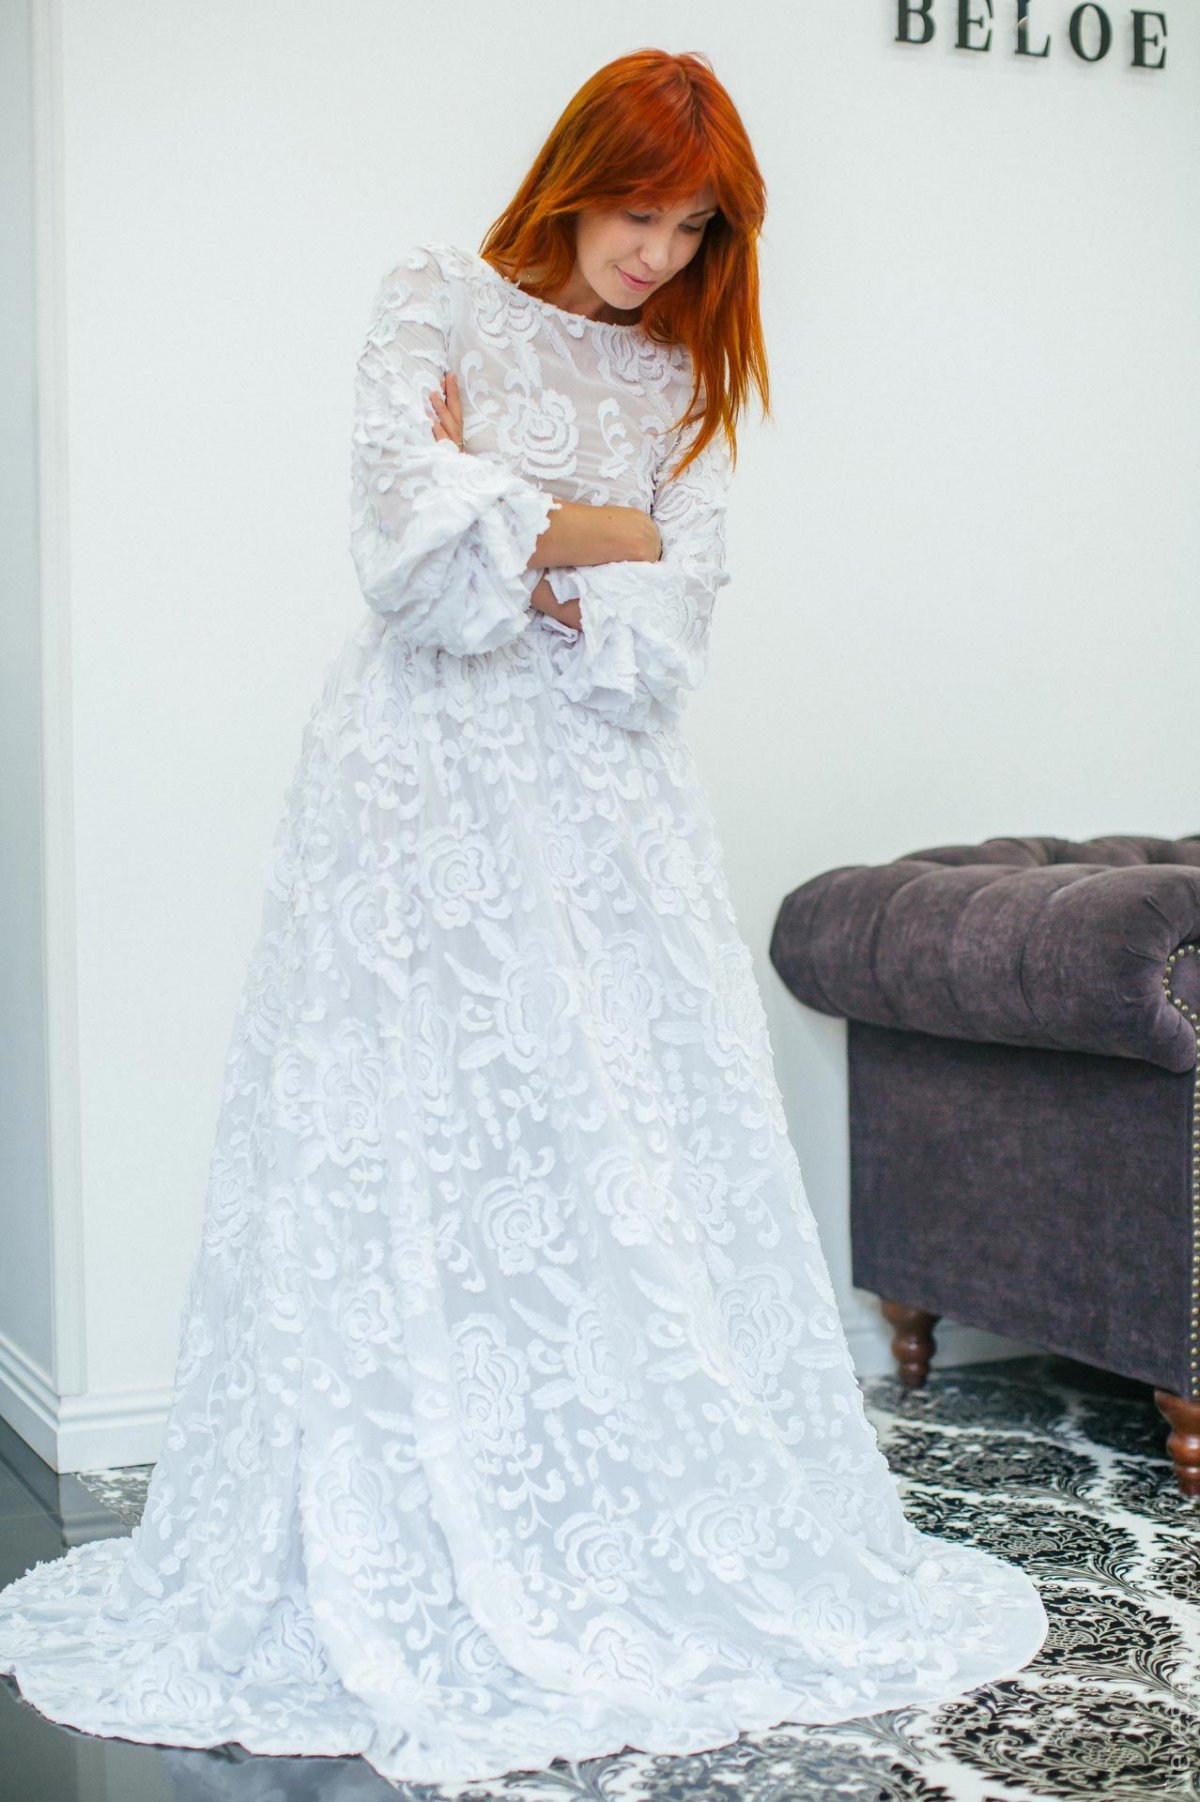 Катерина Кирильчева примеряет свадебное платье